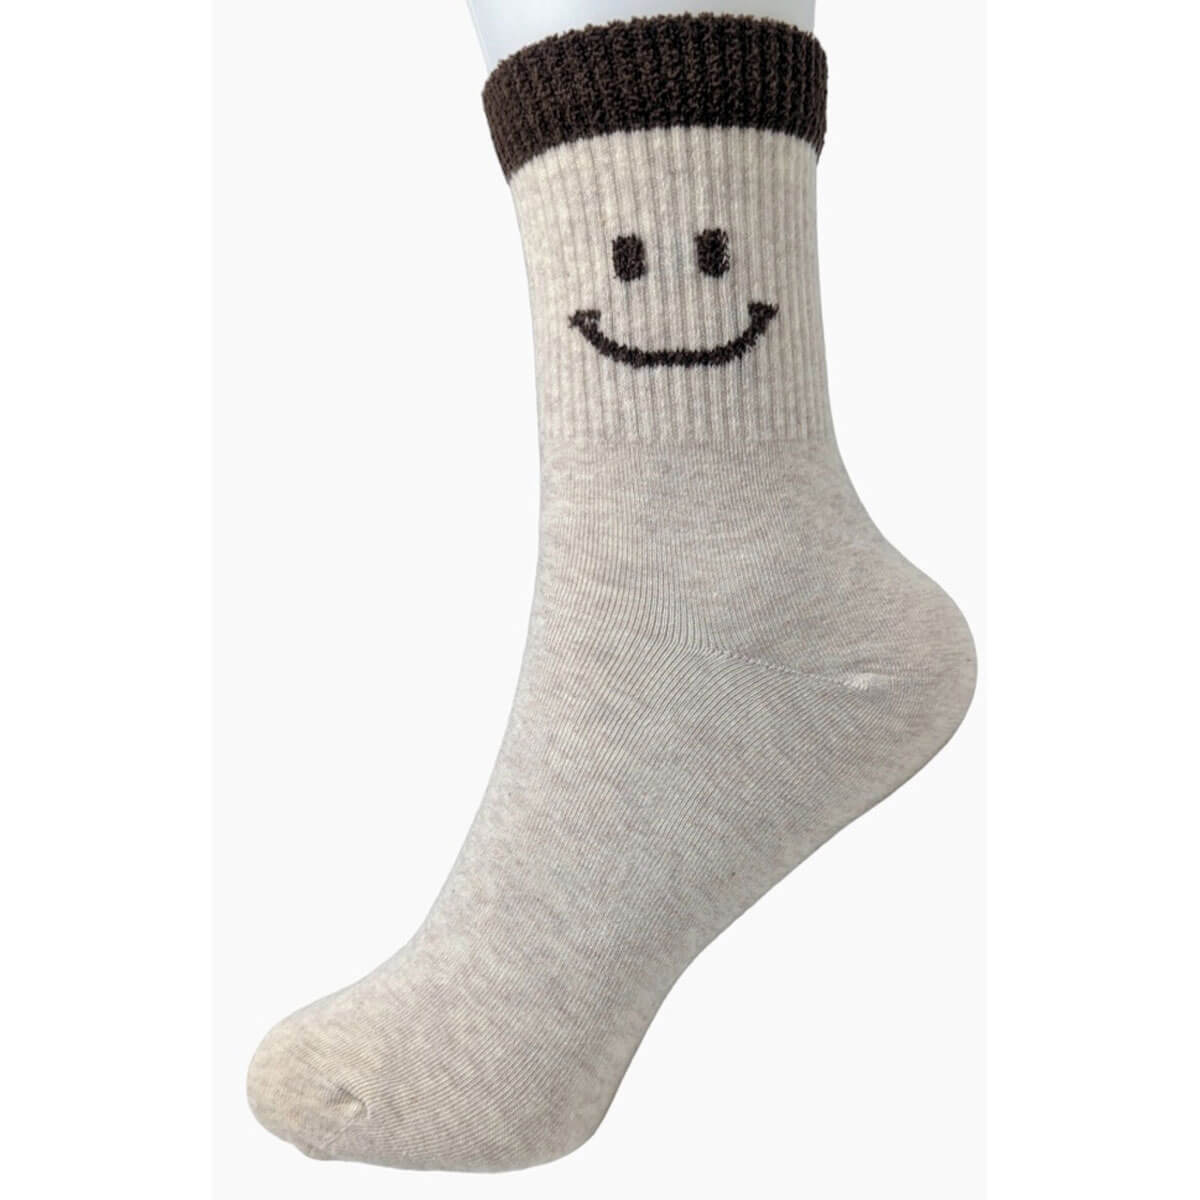 Smiley Face Half Crew Socks